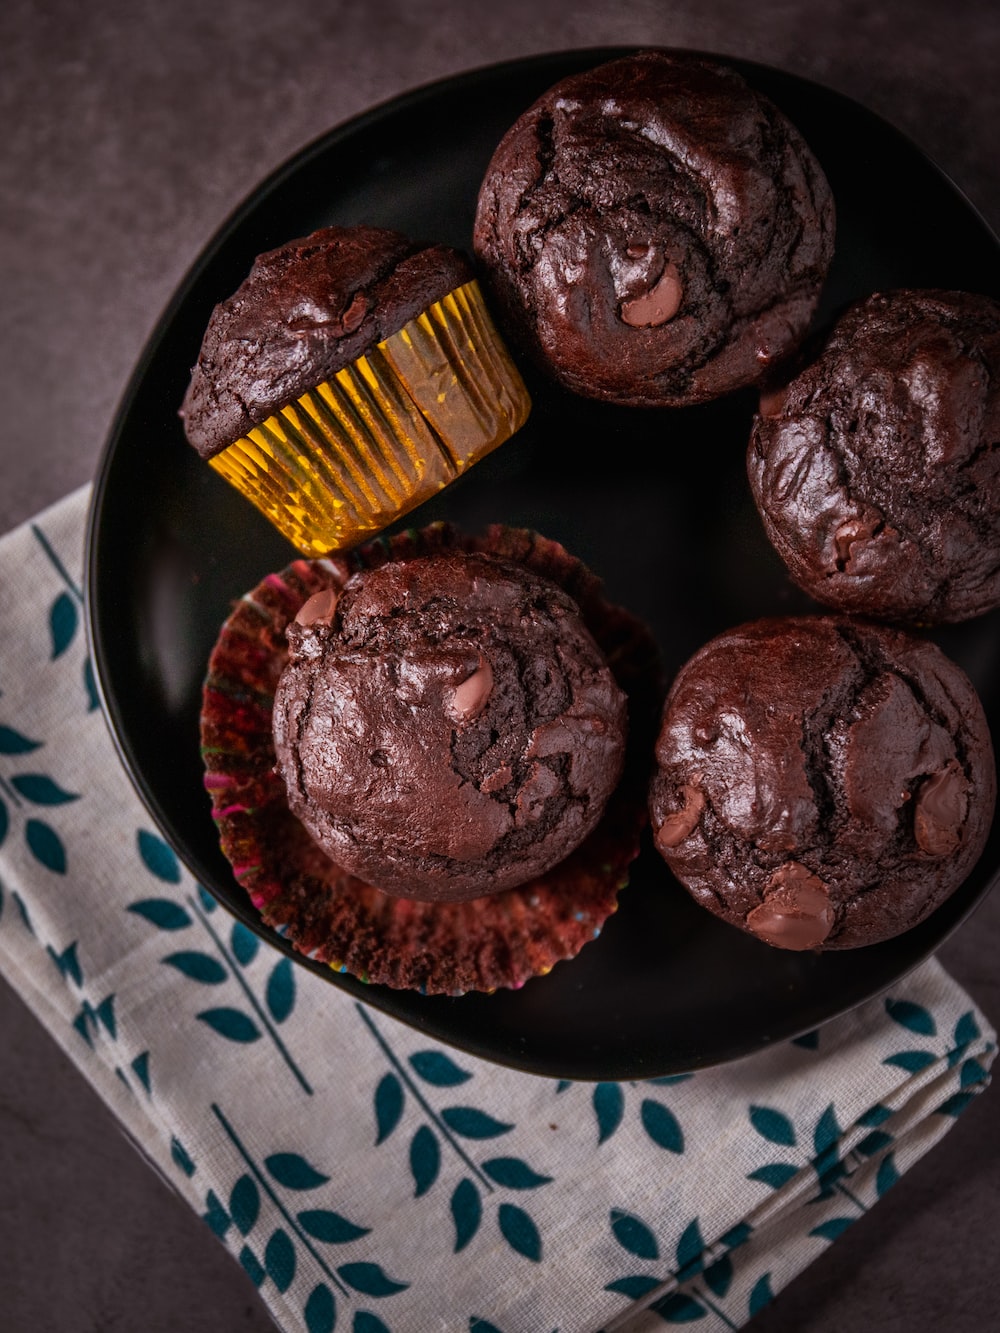 Recette NutriSimple Muffin protéiné au chocolat